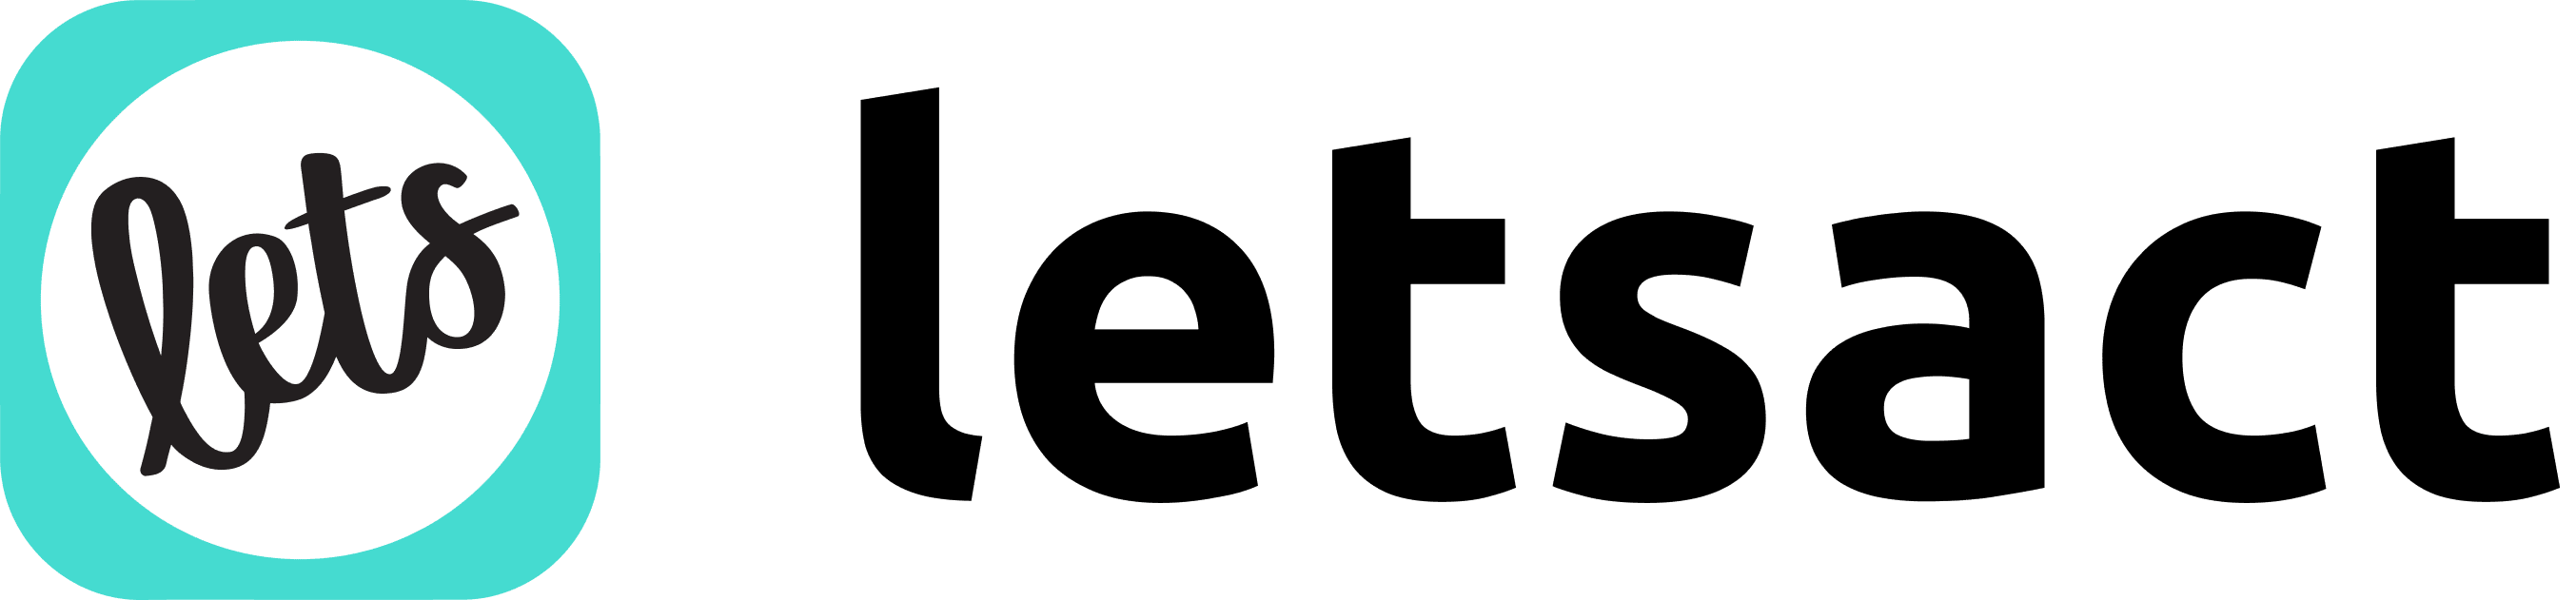 letsact logo